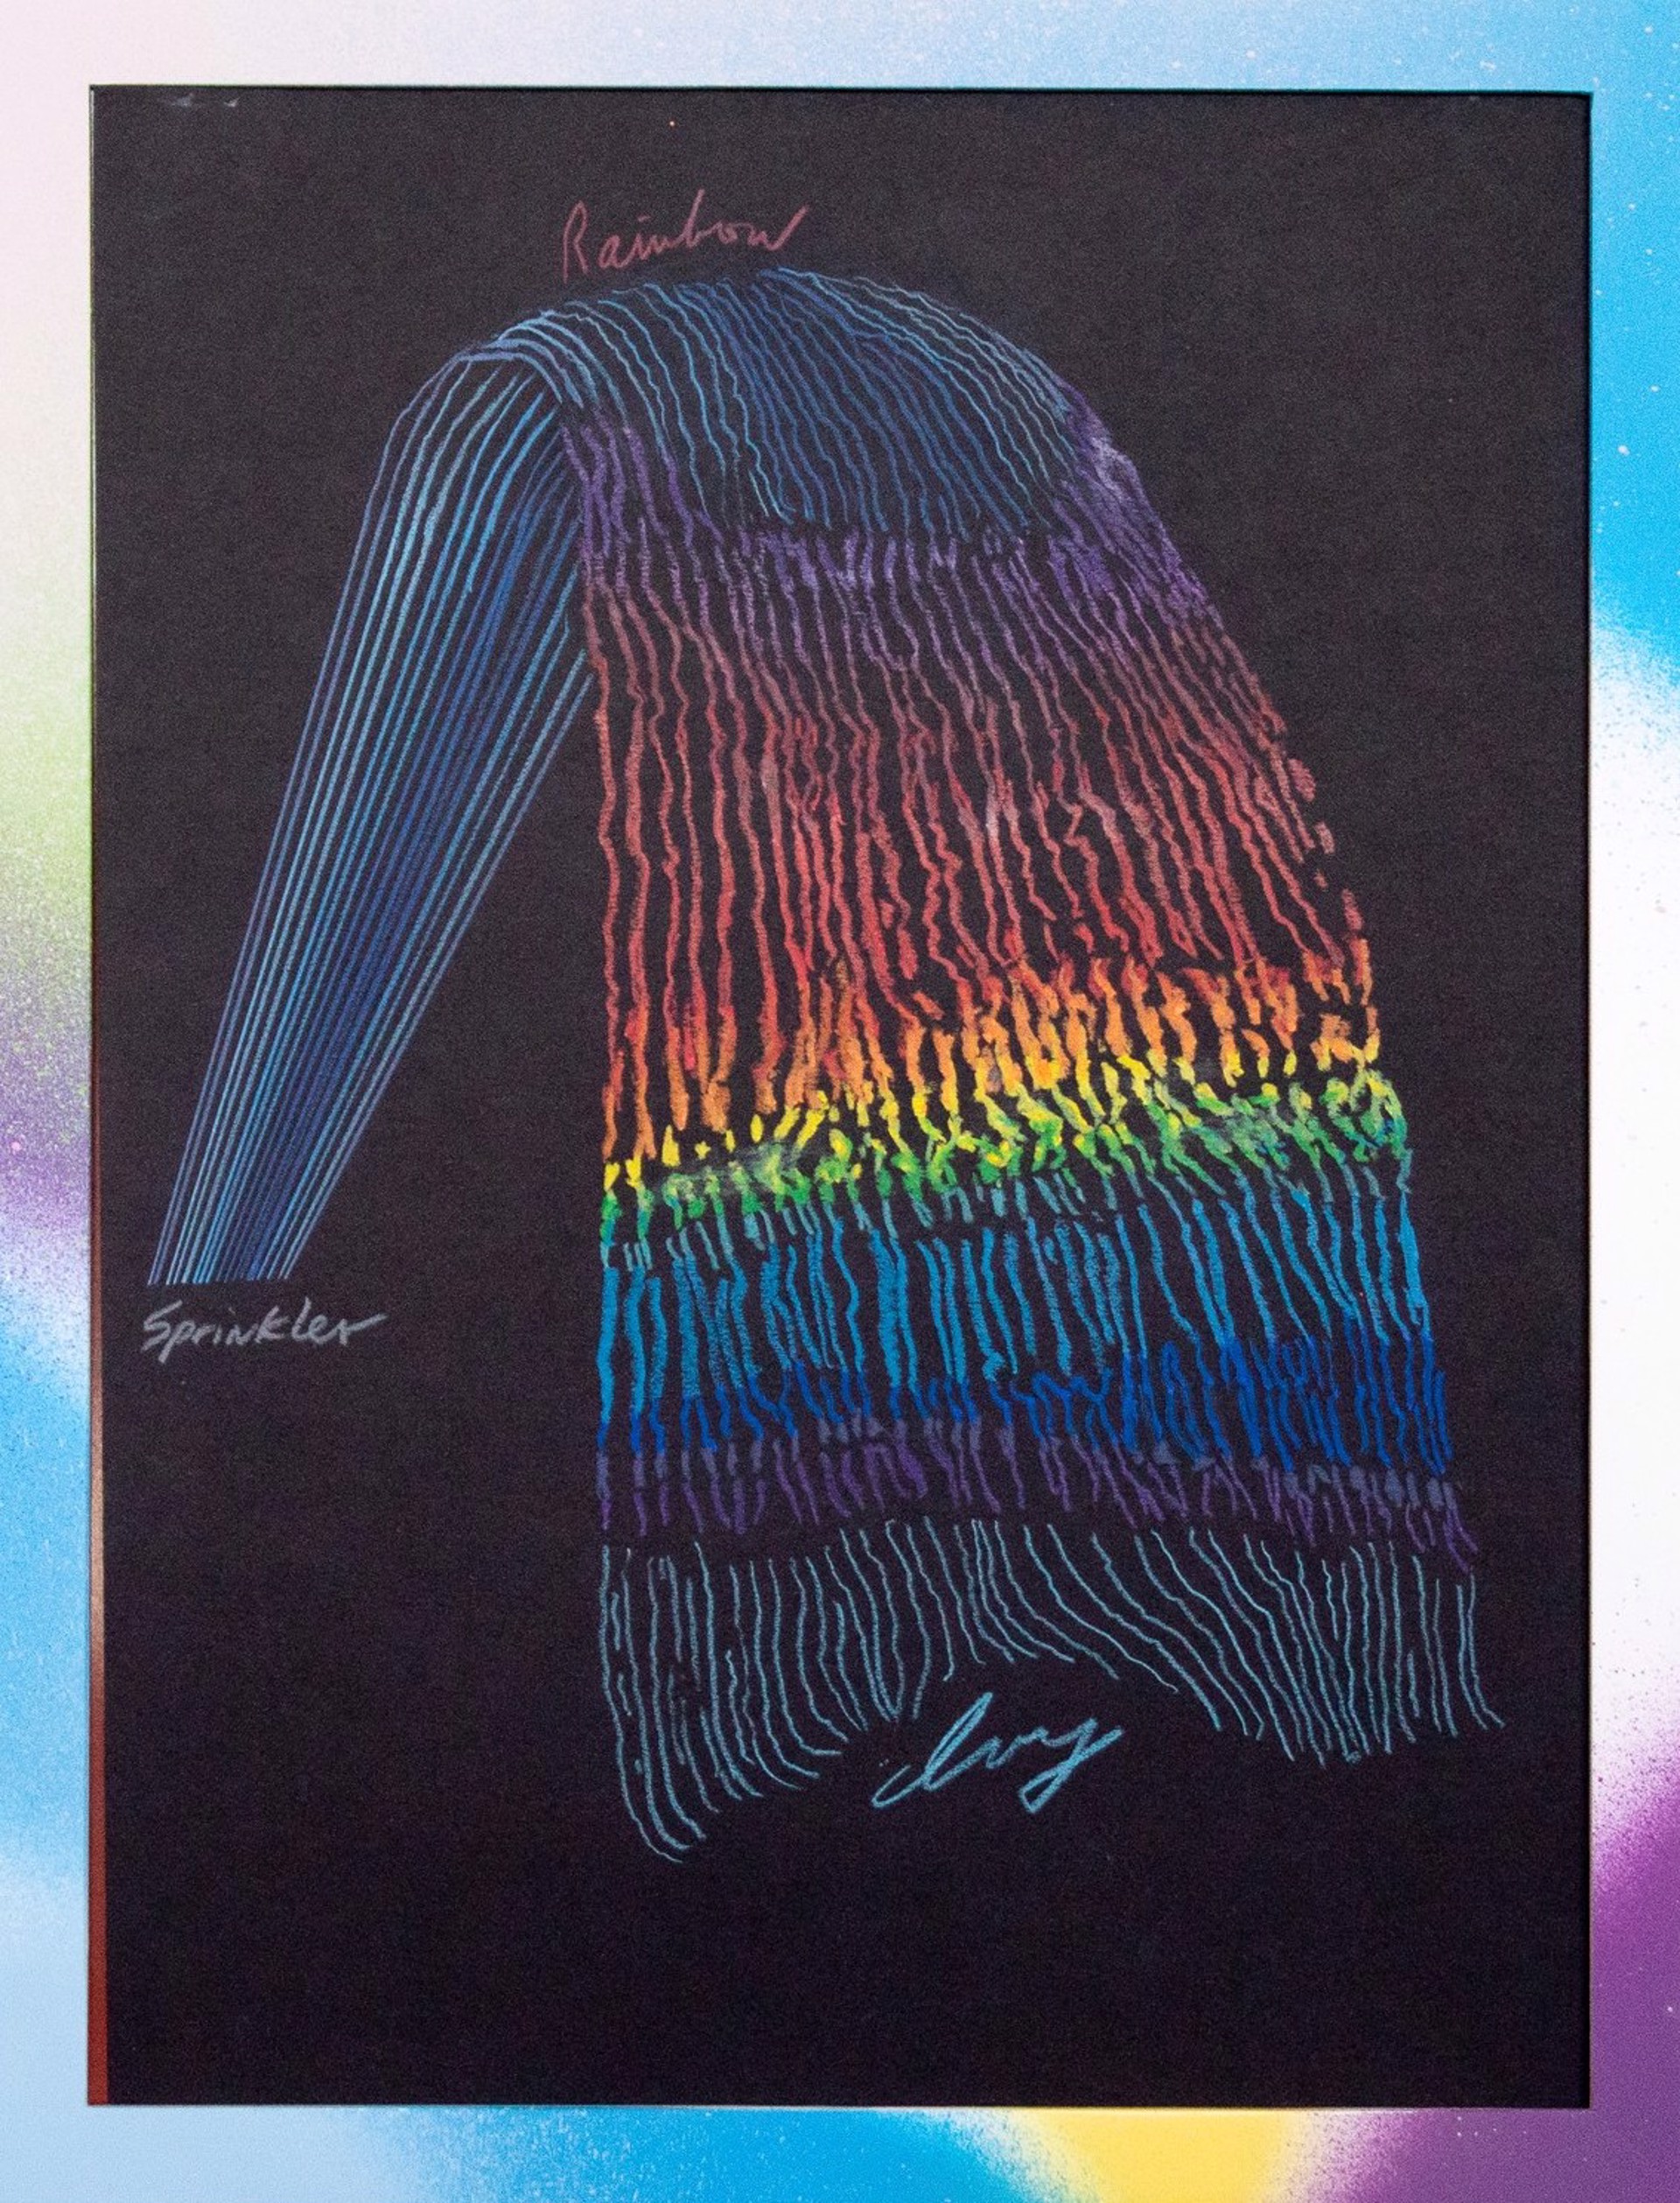 Rainbow Sprinkler 2 by Paul Collins